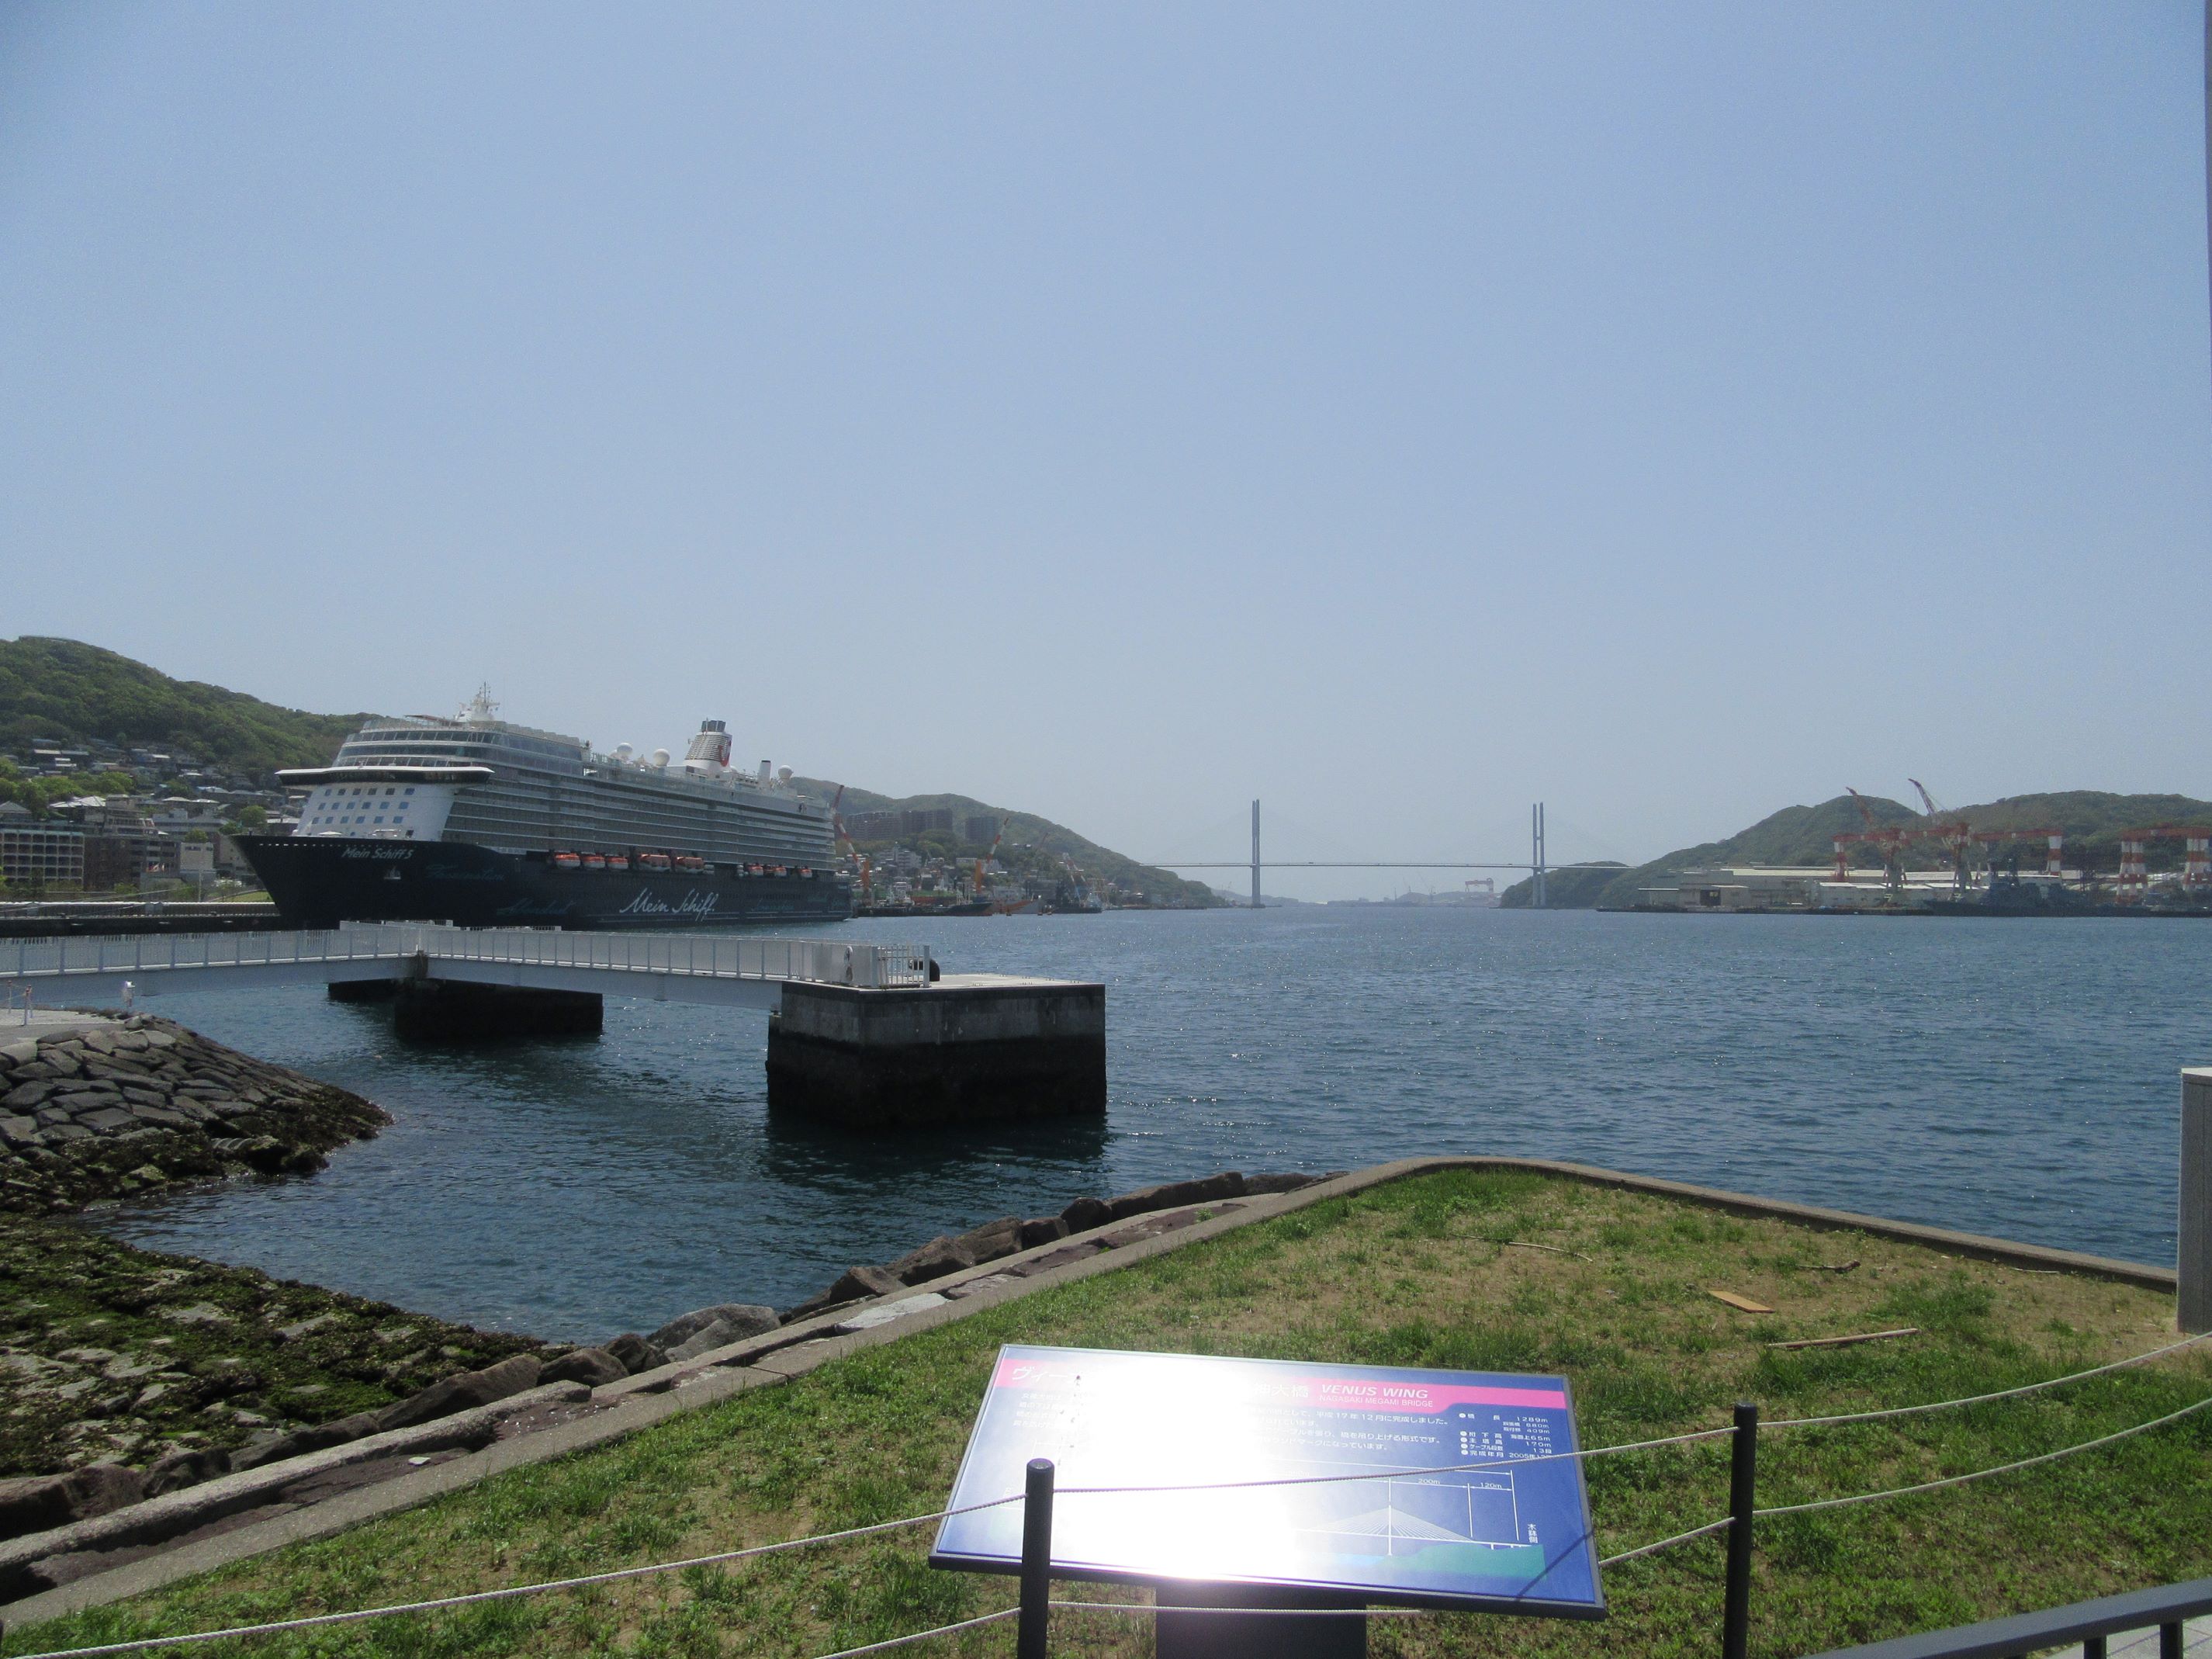 大型クルーズ船『マイン・シフ5(Mein Schiff 5)』と、長崎市のランドマーク・女神大橋の共演。